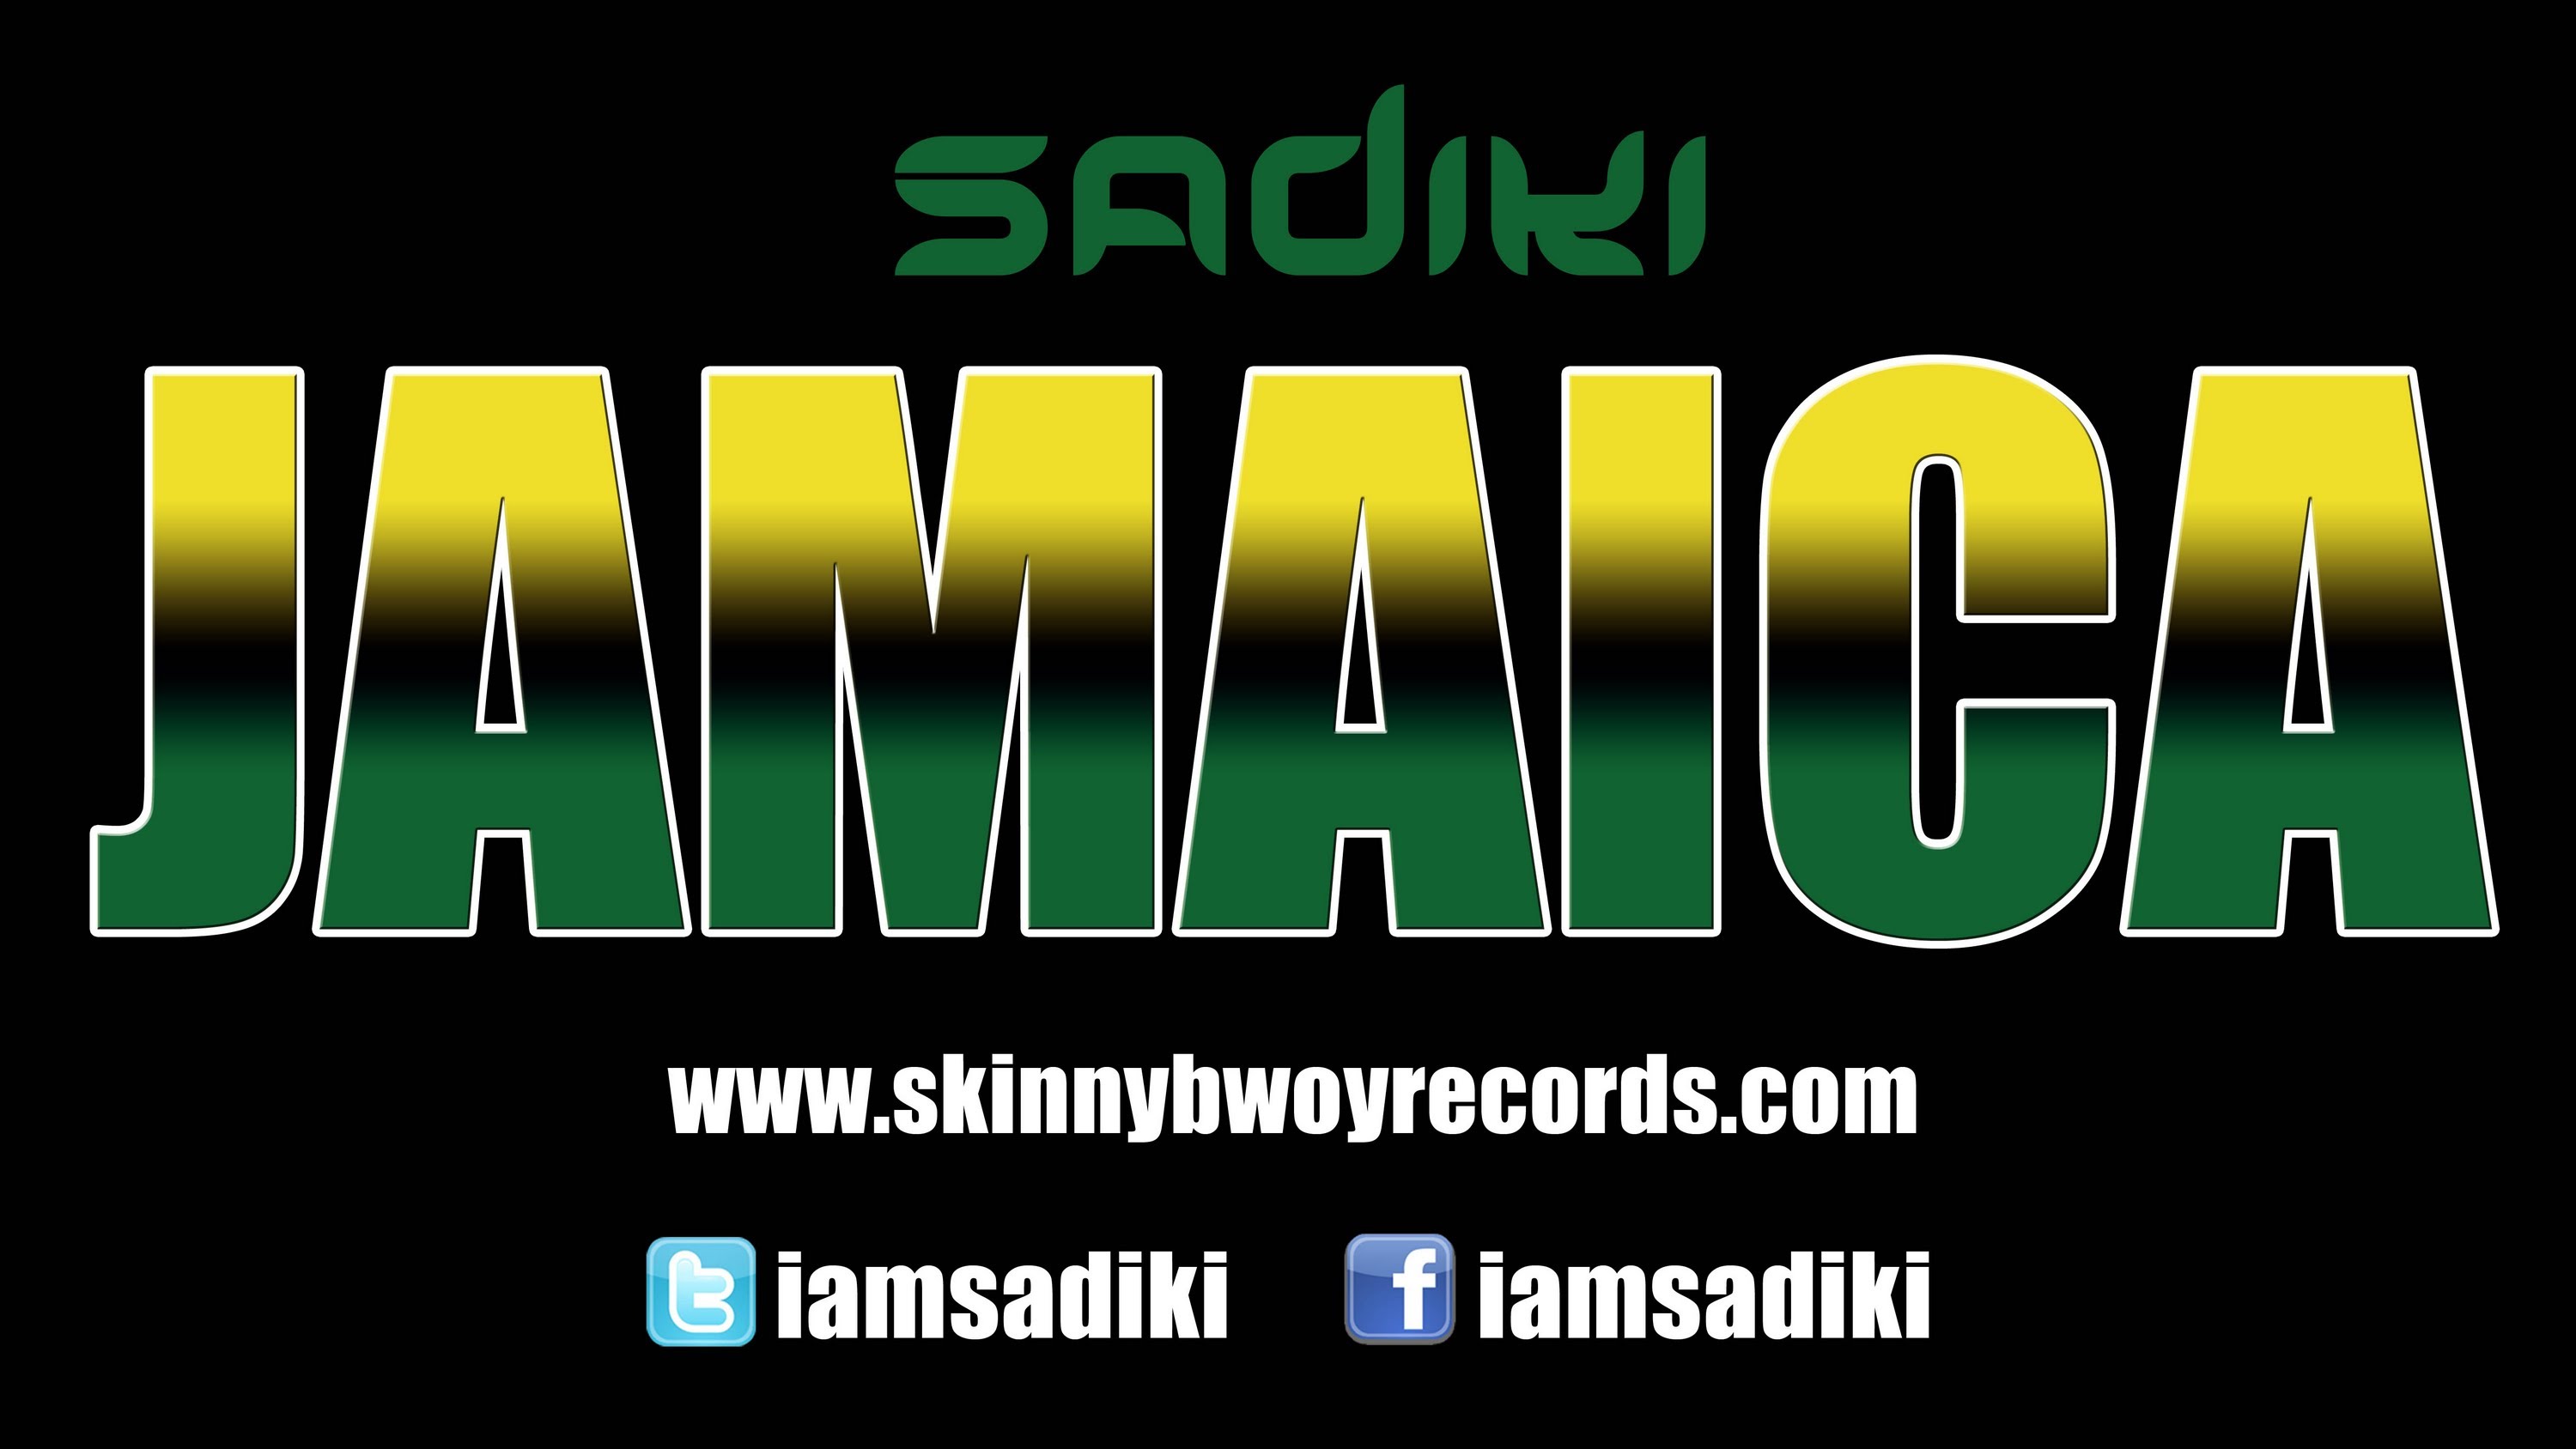 Sadiki - Jamaica [7/8/2013]